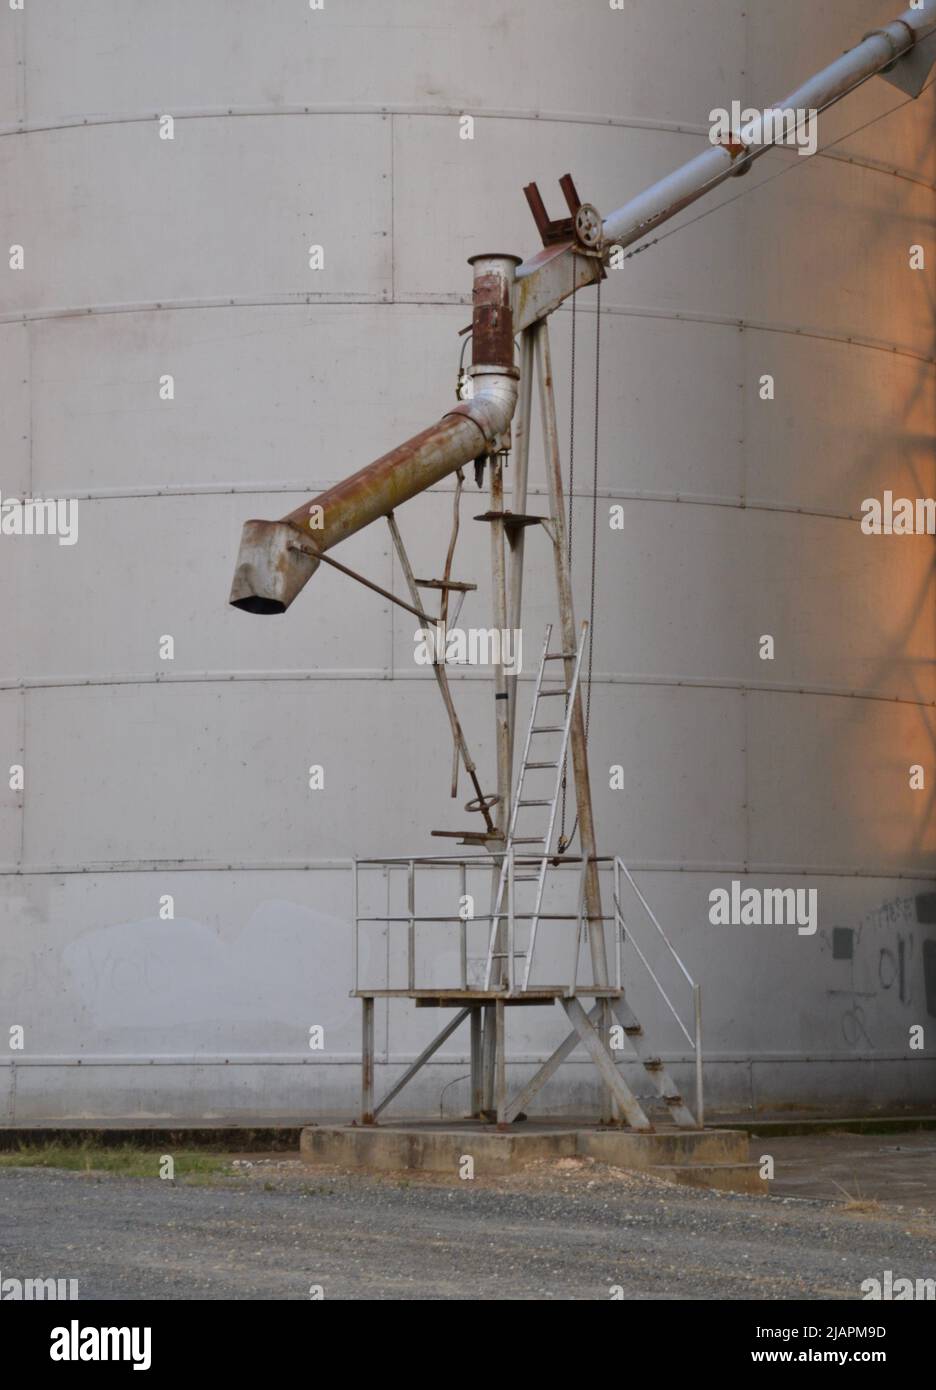 Ein Rohr aus Stahl, Metall oder Aluminium, das sich an der Seite eines Getreidesilos in der regionalen australischen Bauerngemeinde Rutherglen, Victoria, befindet Stockfoto